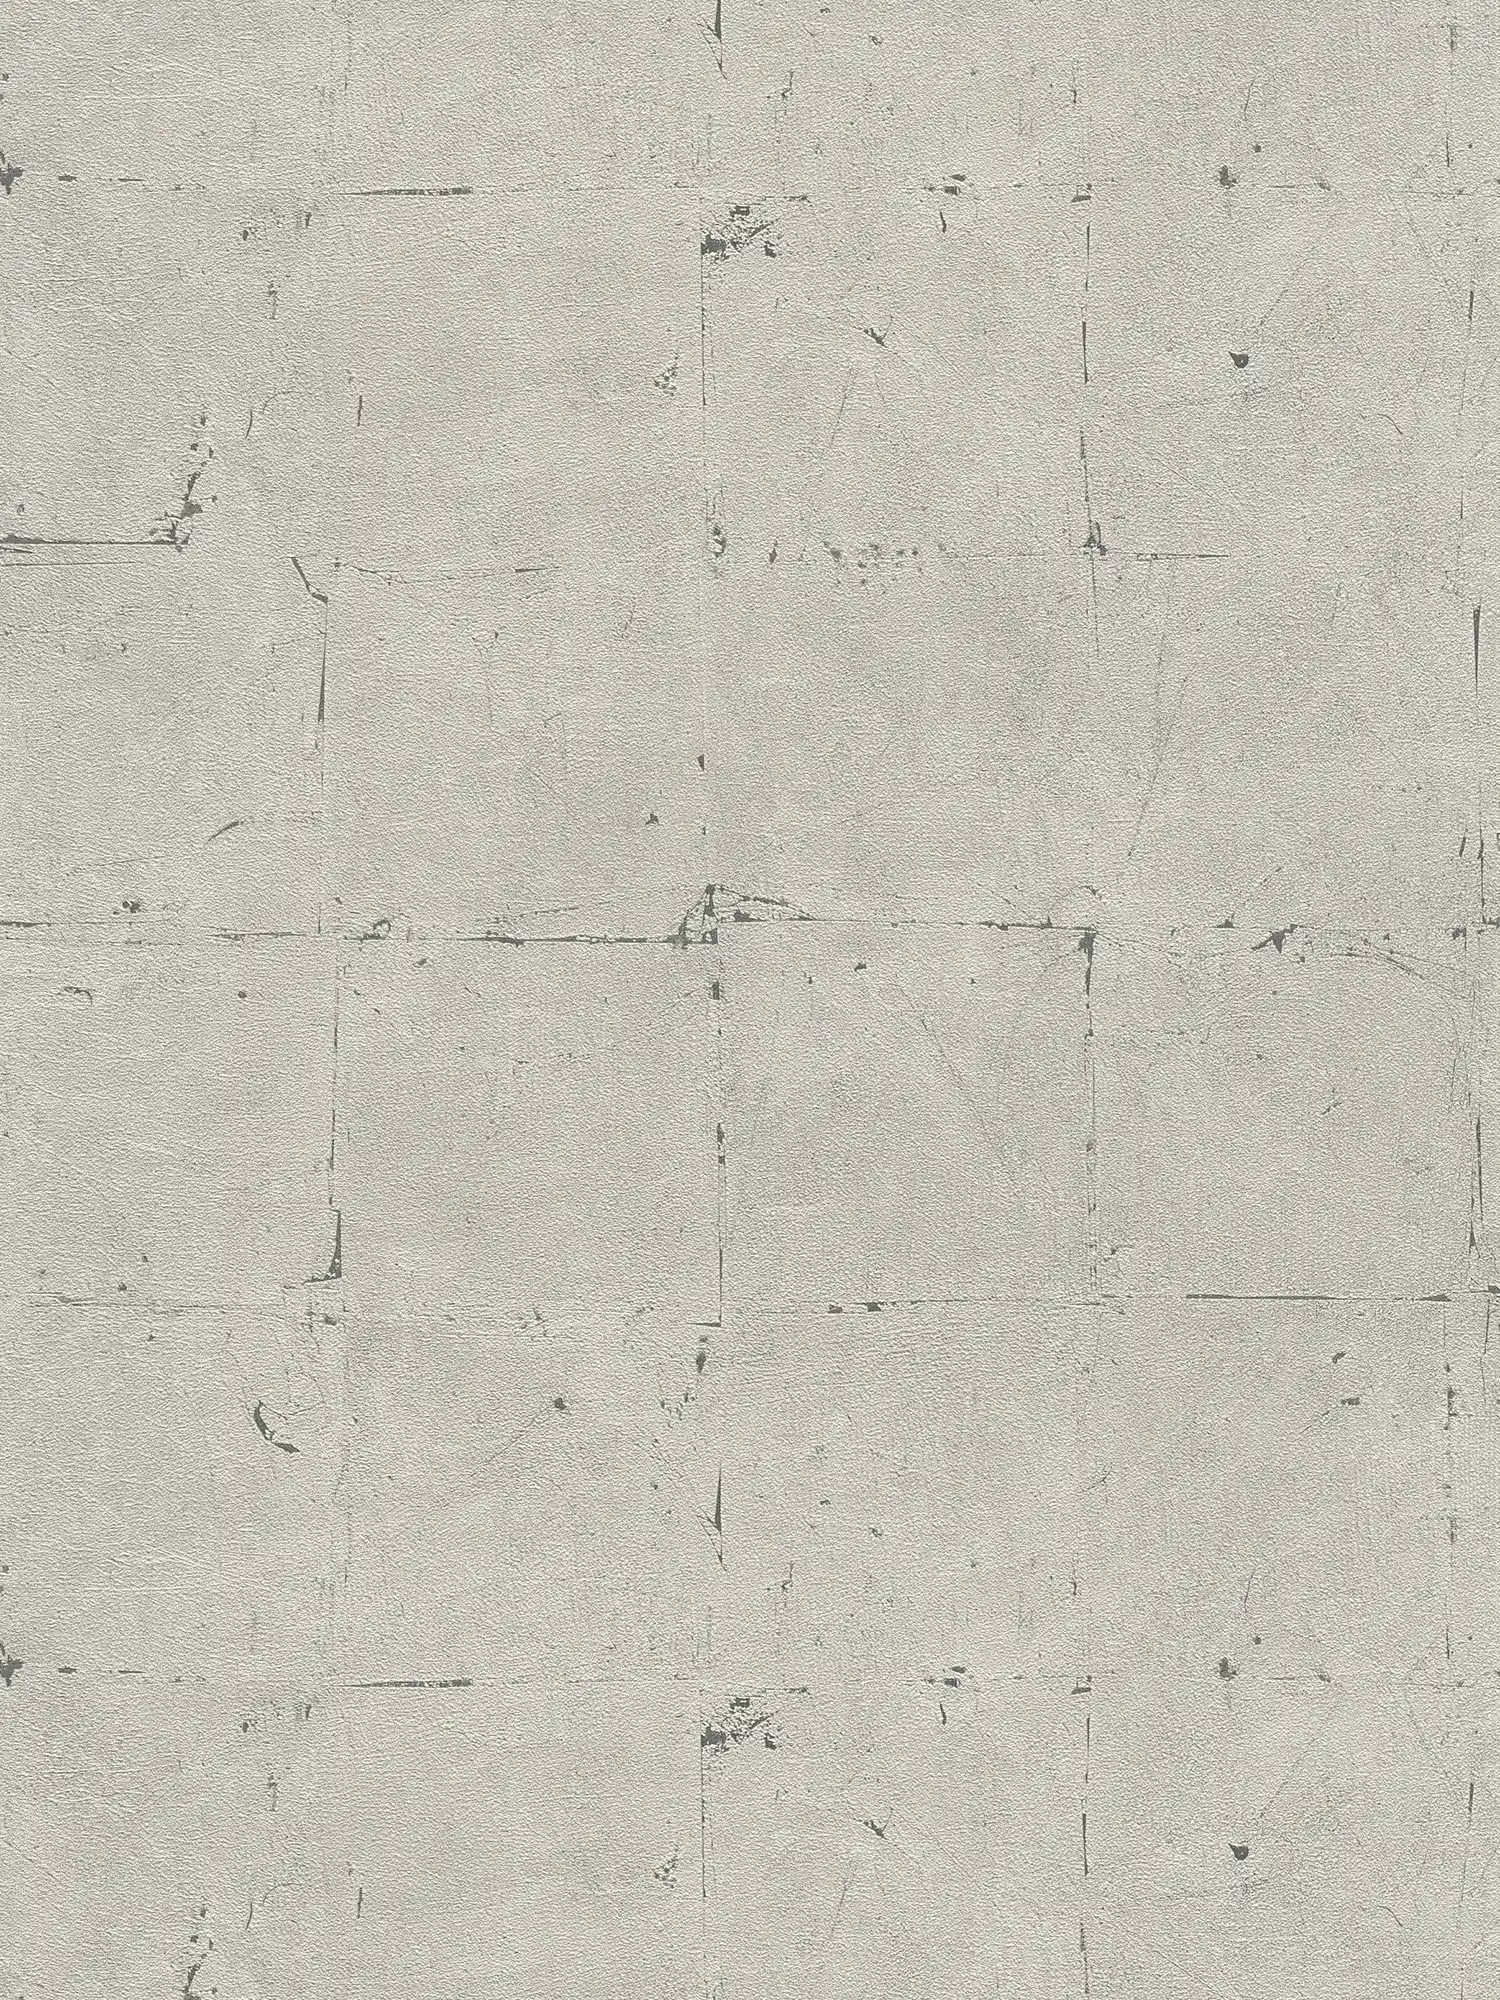 Steenachtig behang met structuurpatroon - grijs, beige
